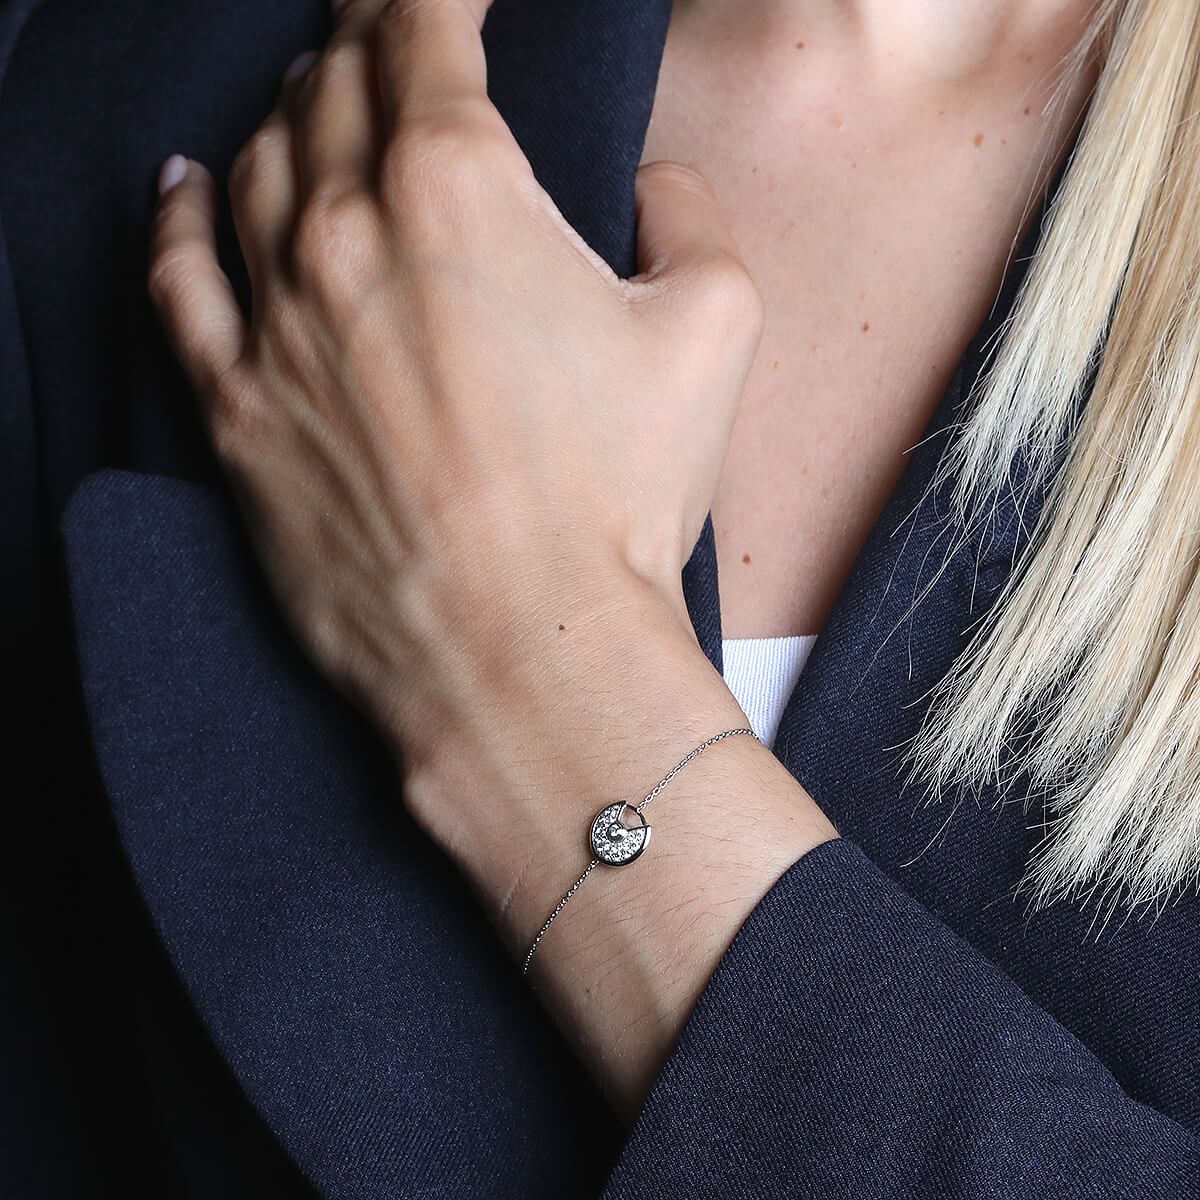 CRB6044117 - Amulette de Cartier bracelet, XS model - Pink gold